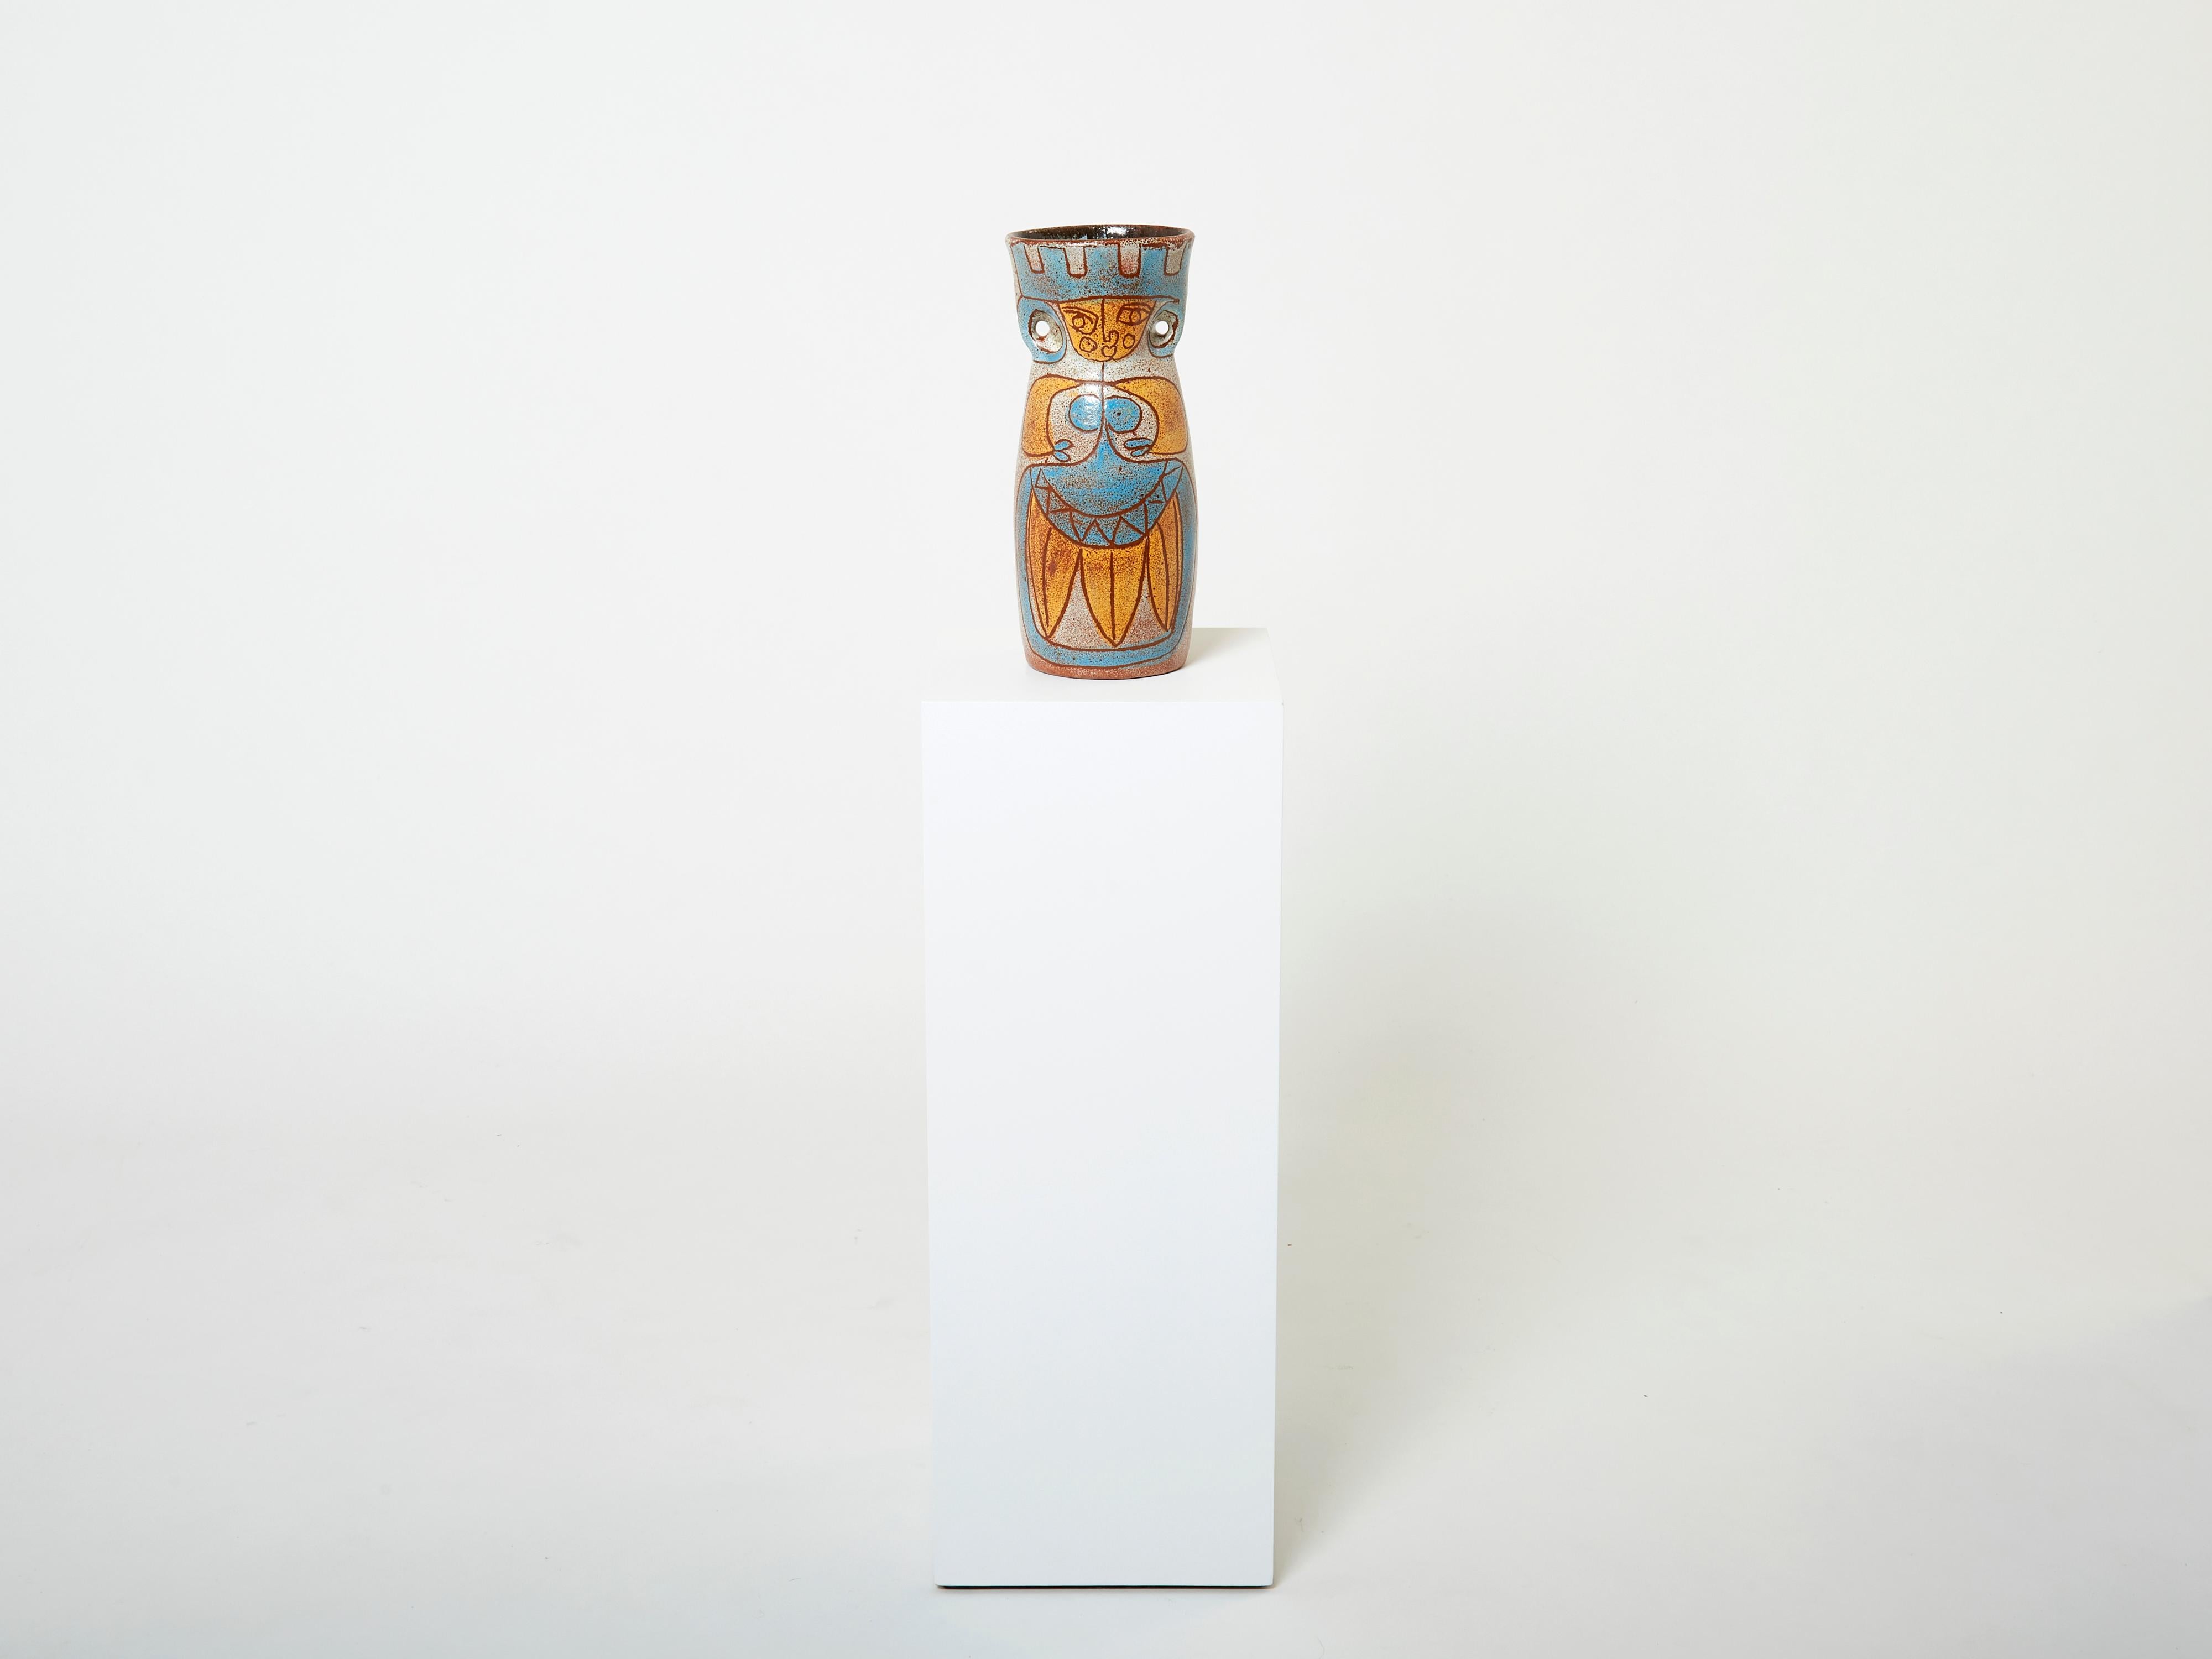 Ce rare vase à oreilles en céramique émaillée d'Accolay faisait partie de la collection Maya fabriquée dans les années 1950 par Les potiers d'Accolay. Il a une présence merveilleuse et sera beau dans n'importe quel espace. Signé, et en excellent